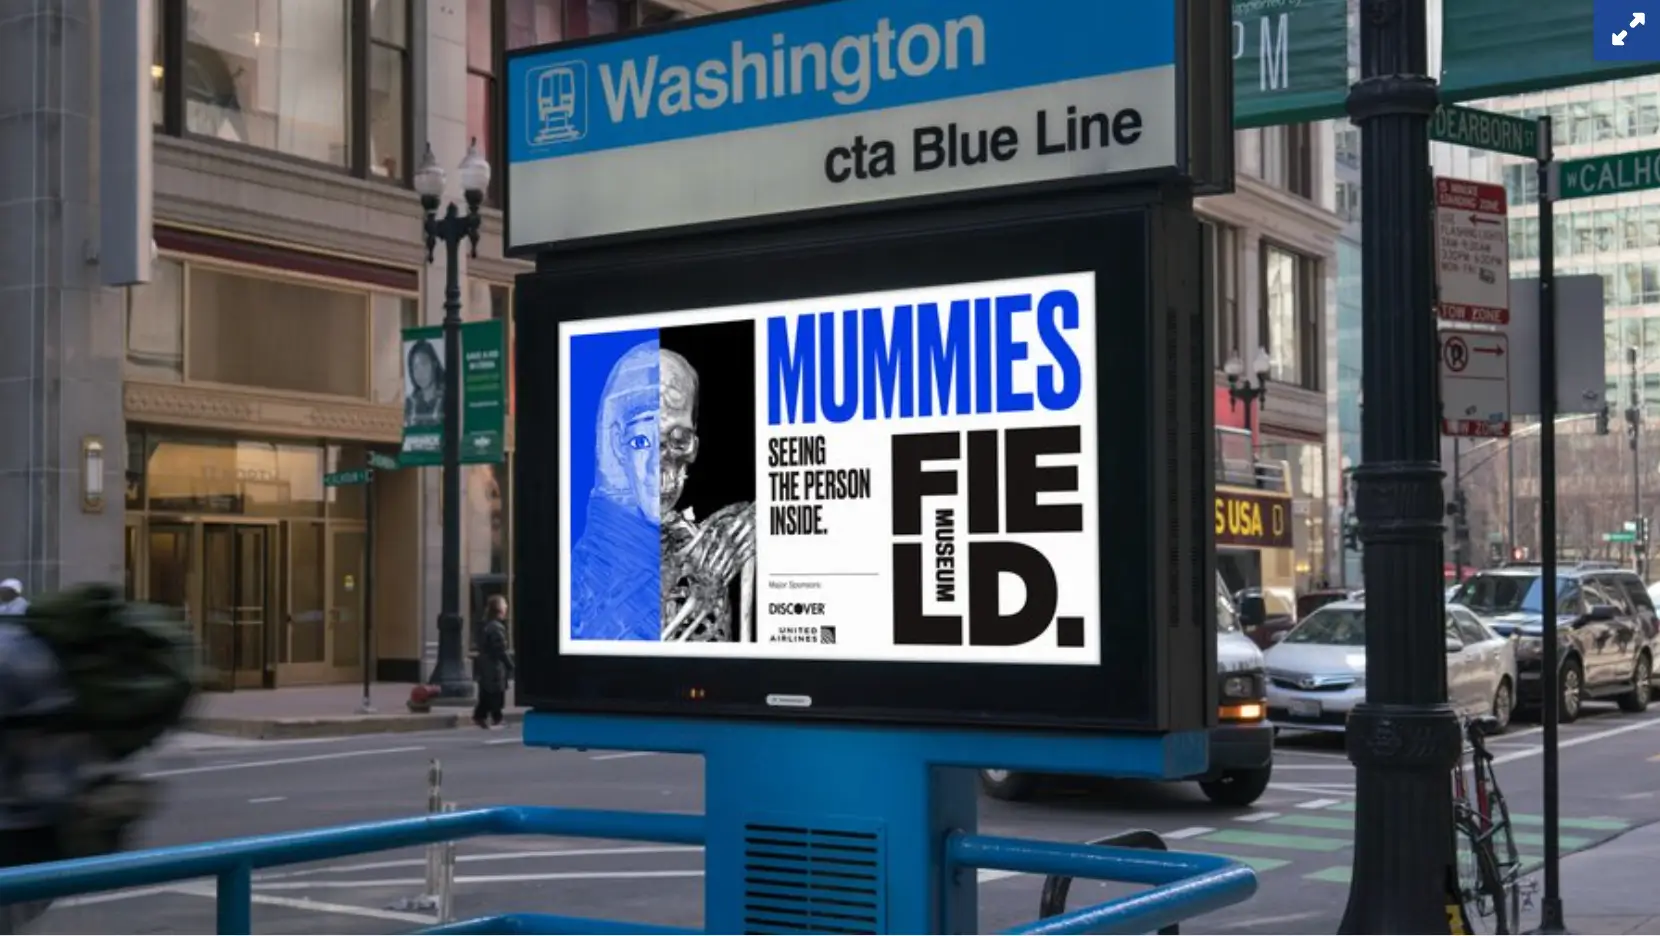 Cette image montre la campagne du Field Museum de Chicago pour son exposition de momies en 2018, mêlant publicité traditionnelle et contenu de médias sociaux pour susciter l'intérêt et attirer les visiteurs au musée.